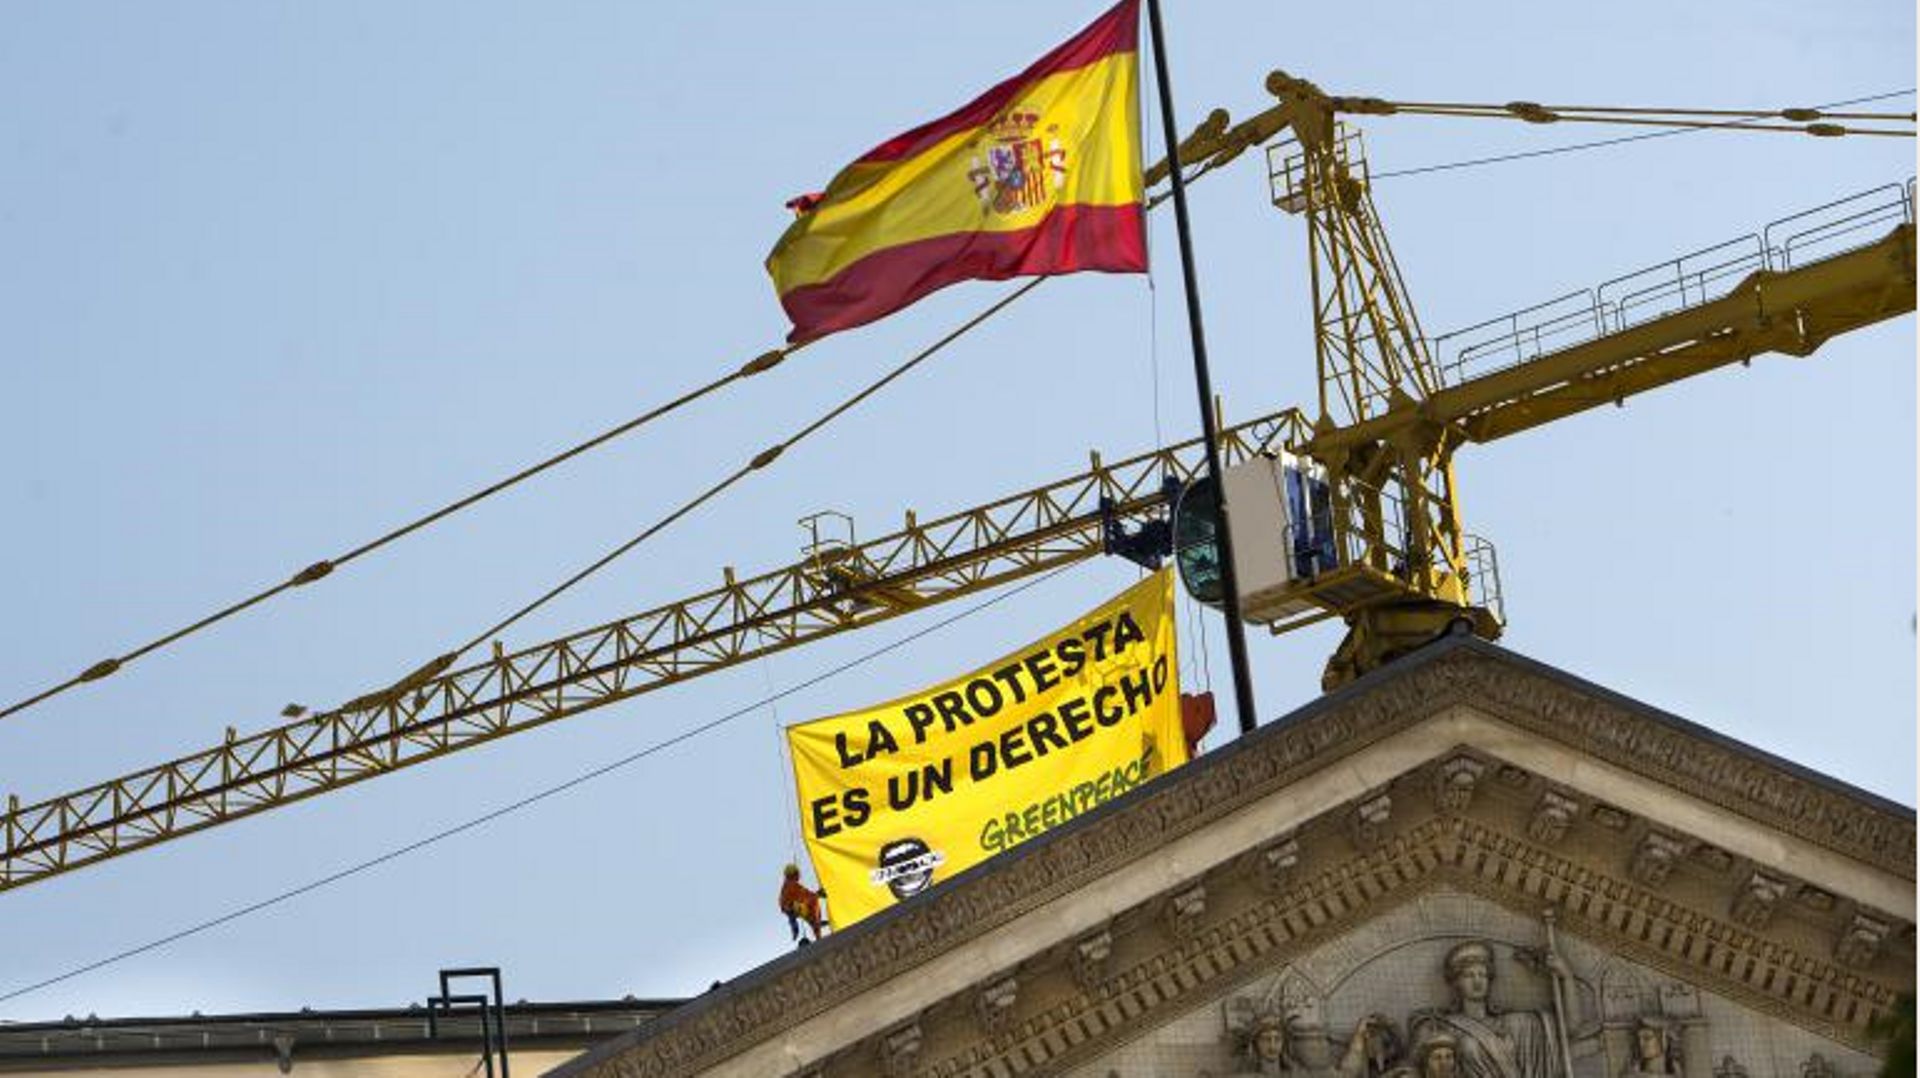 

"Manifester est un droit." Des militants de Greenpeace déploient une banderole à Madrid ce 30 juin 2015 à quelques heures de l'entrée en vigueur de la polémique loi de sécurité citoyenne, appelée "ley mordaza" (loi bâillon). 

